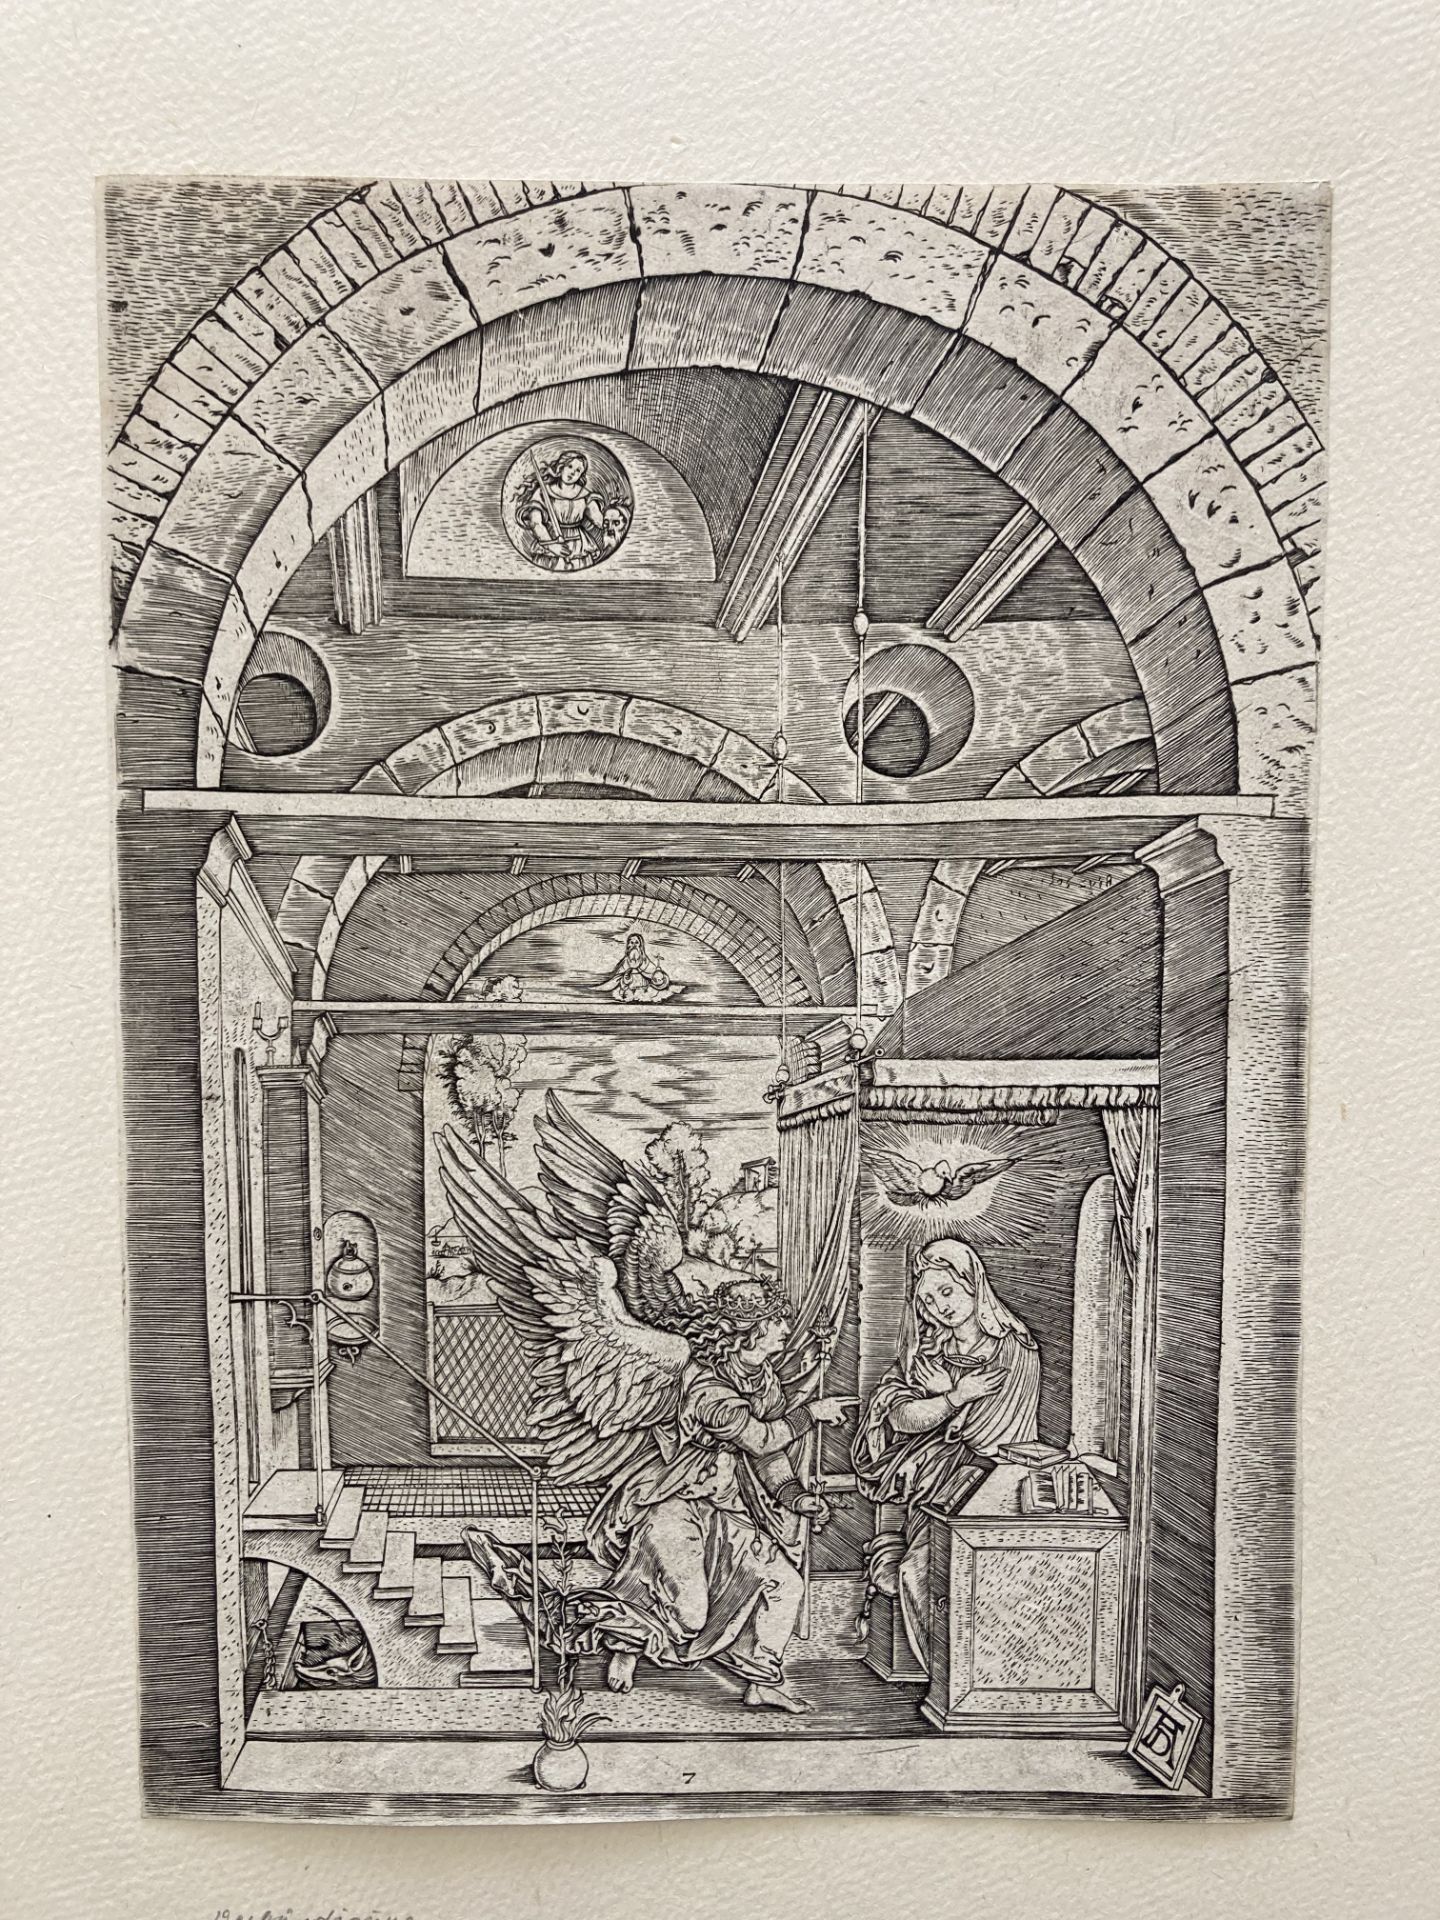 Marcantonio Raimondi ca. 1480 Molinella - 1534 Bologna: Life of the Virgin - Image 12 of 20